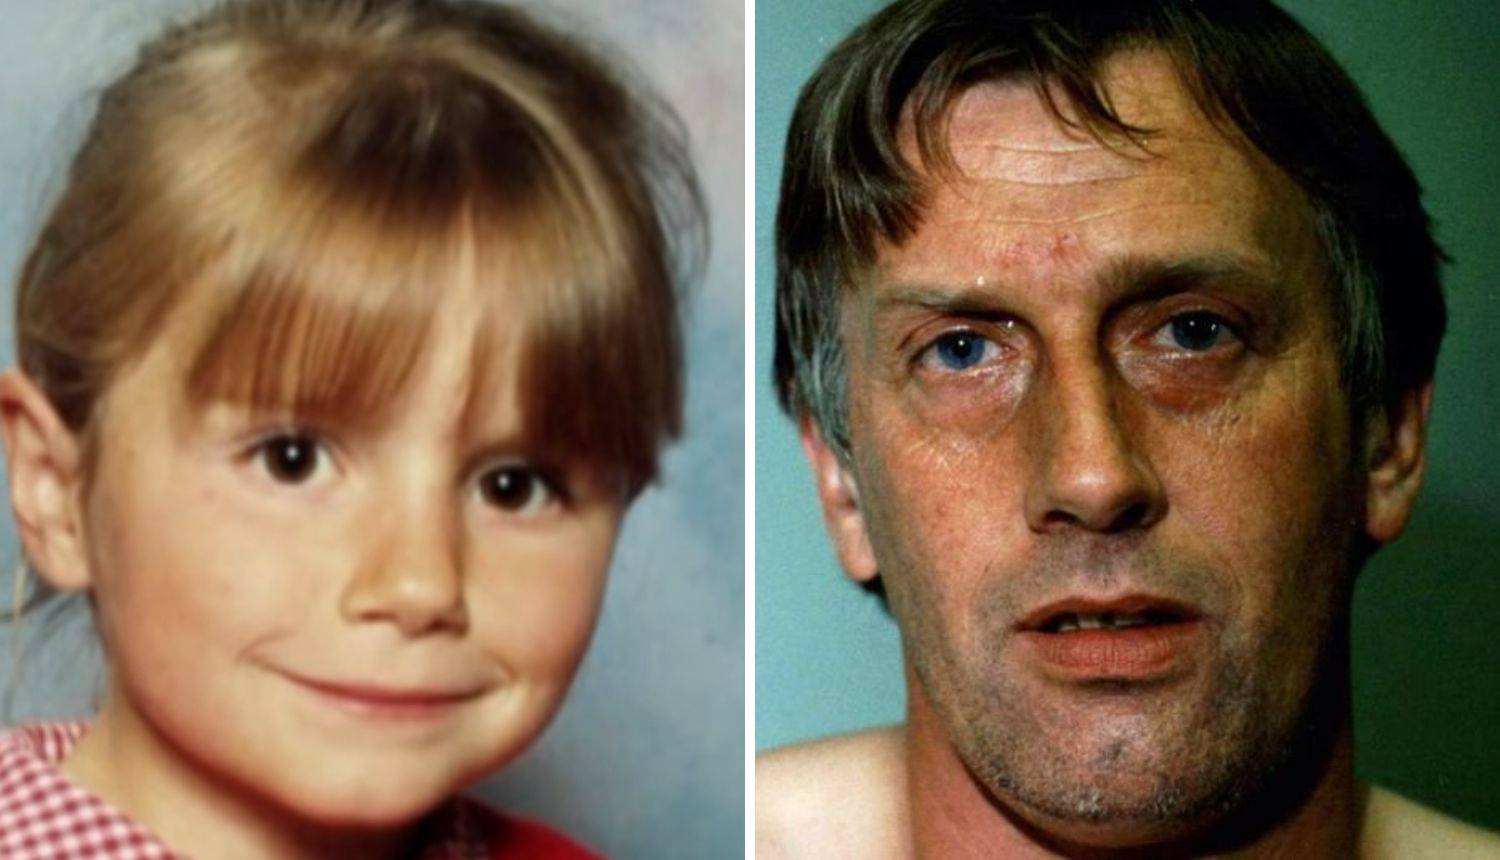 Ubijena prije 20 godina: 'Moju kćer je ubio osuđeni pedofil...'